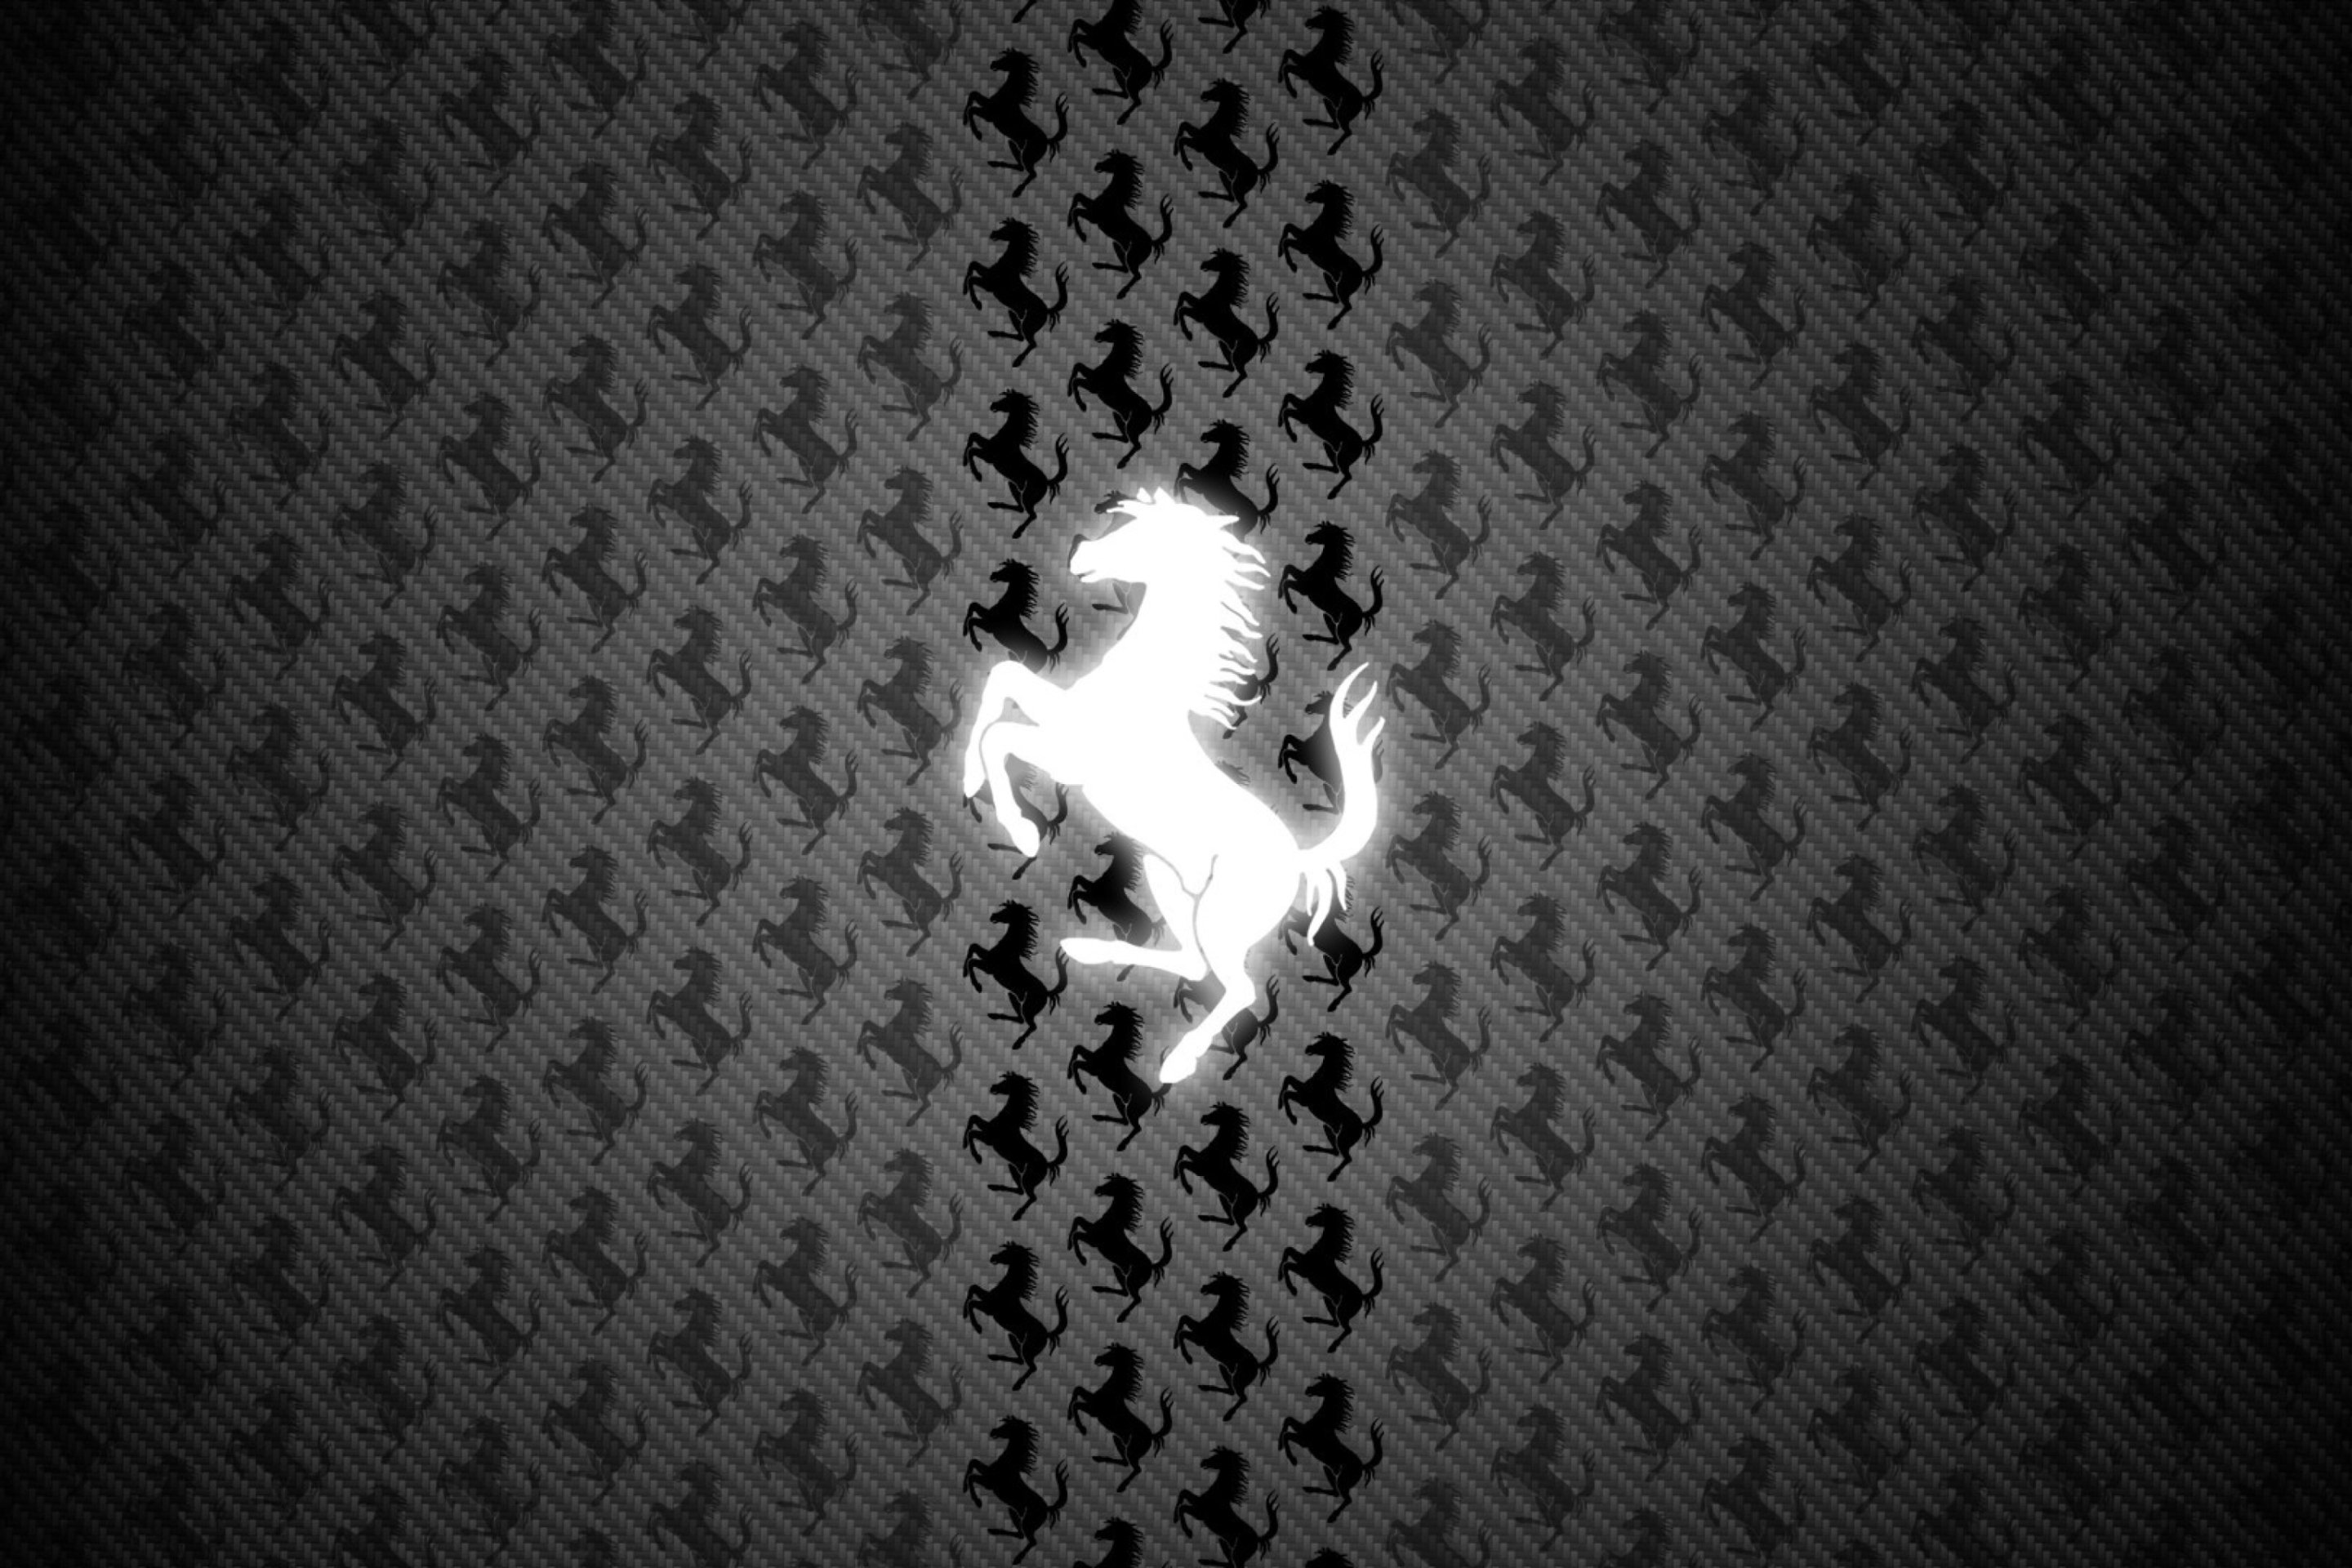 Sfondi Ferrari Logo 2880x1920